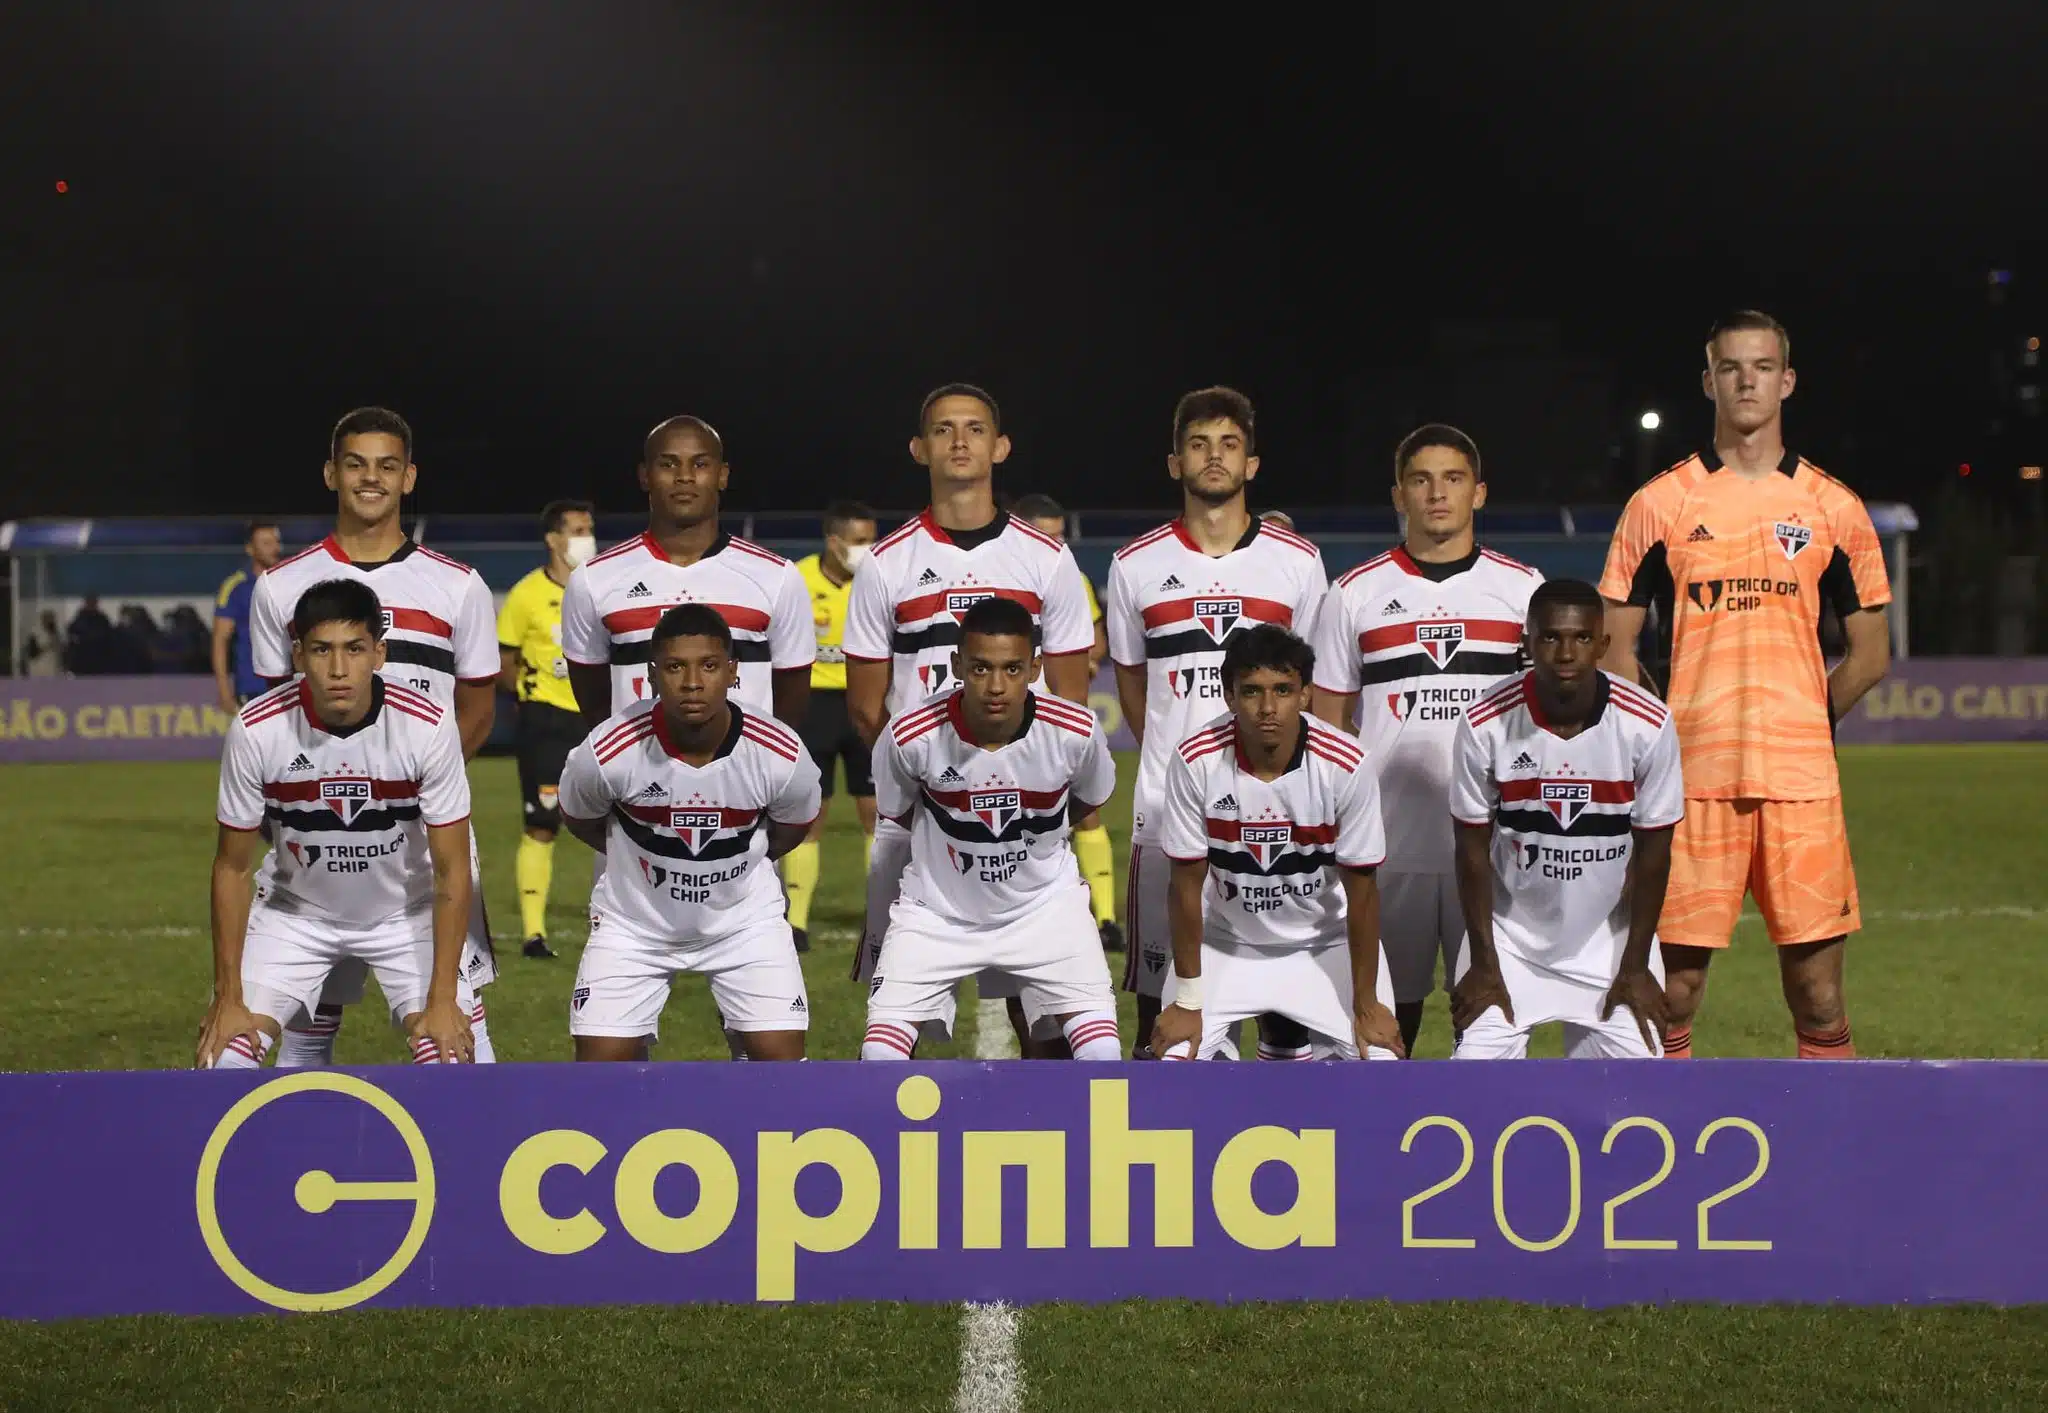 São Paulo x Palmeiras na Copinha: confira data, horário e onde assistir